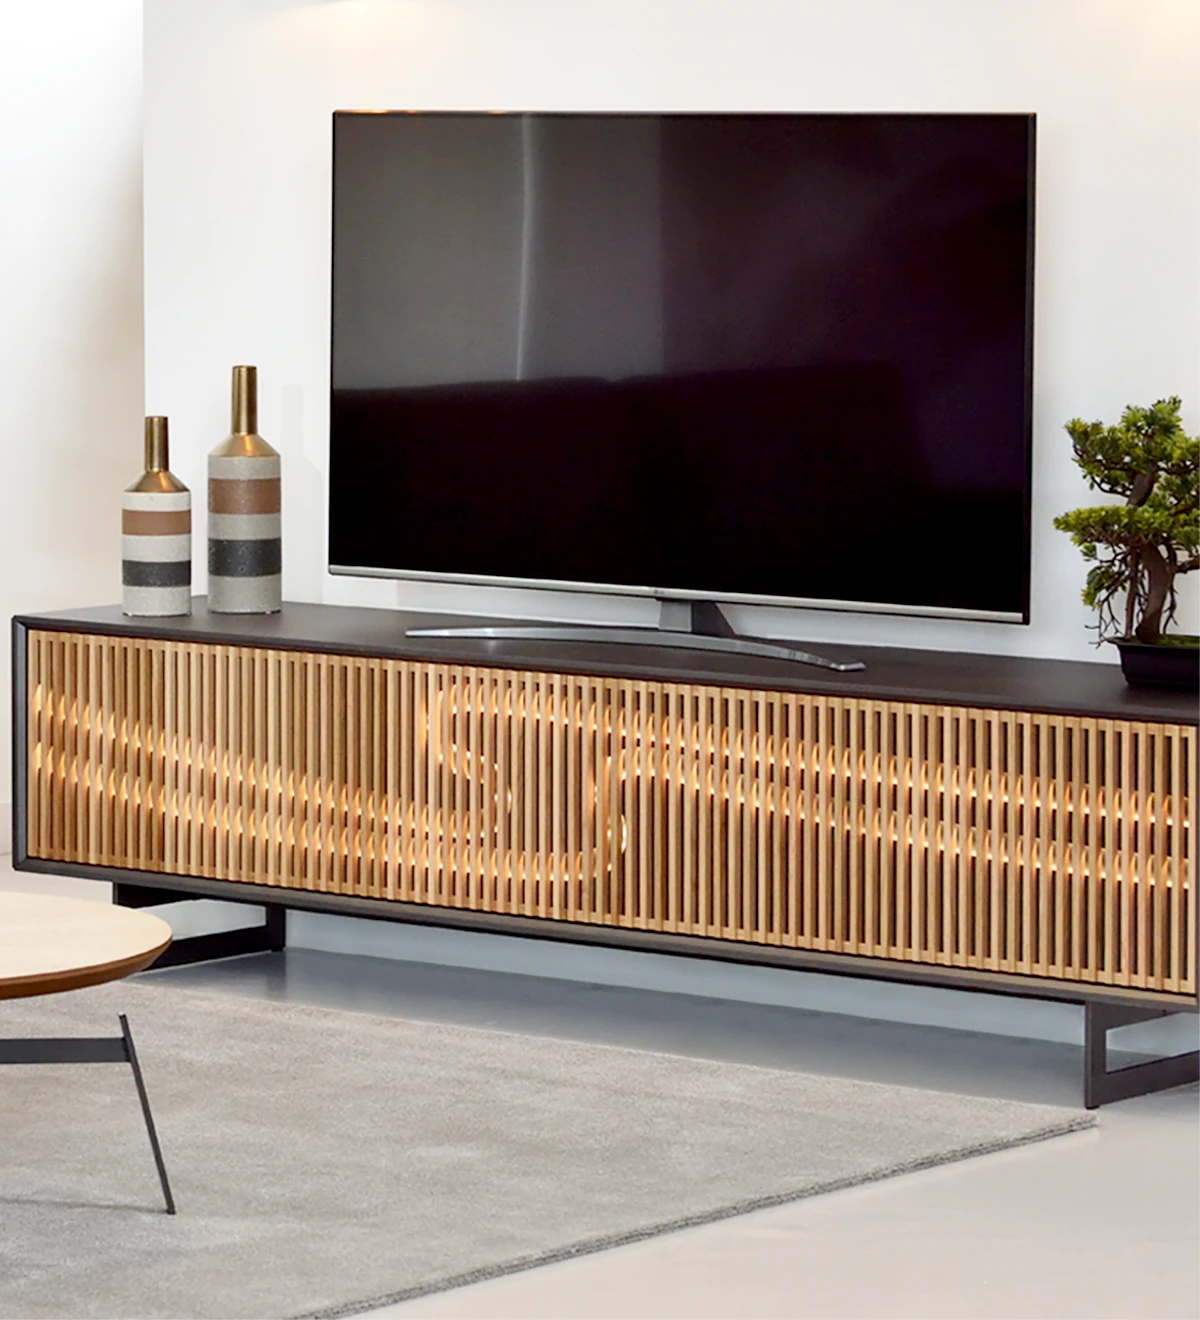 Mueble TV con 2 puertas plegables en roble natural, marco y pies metálicos lacados en negro metalizado.